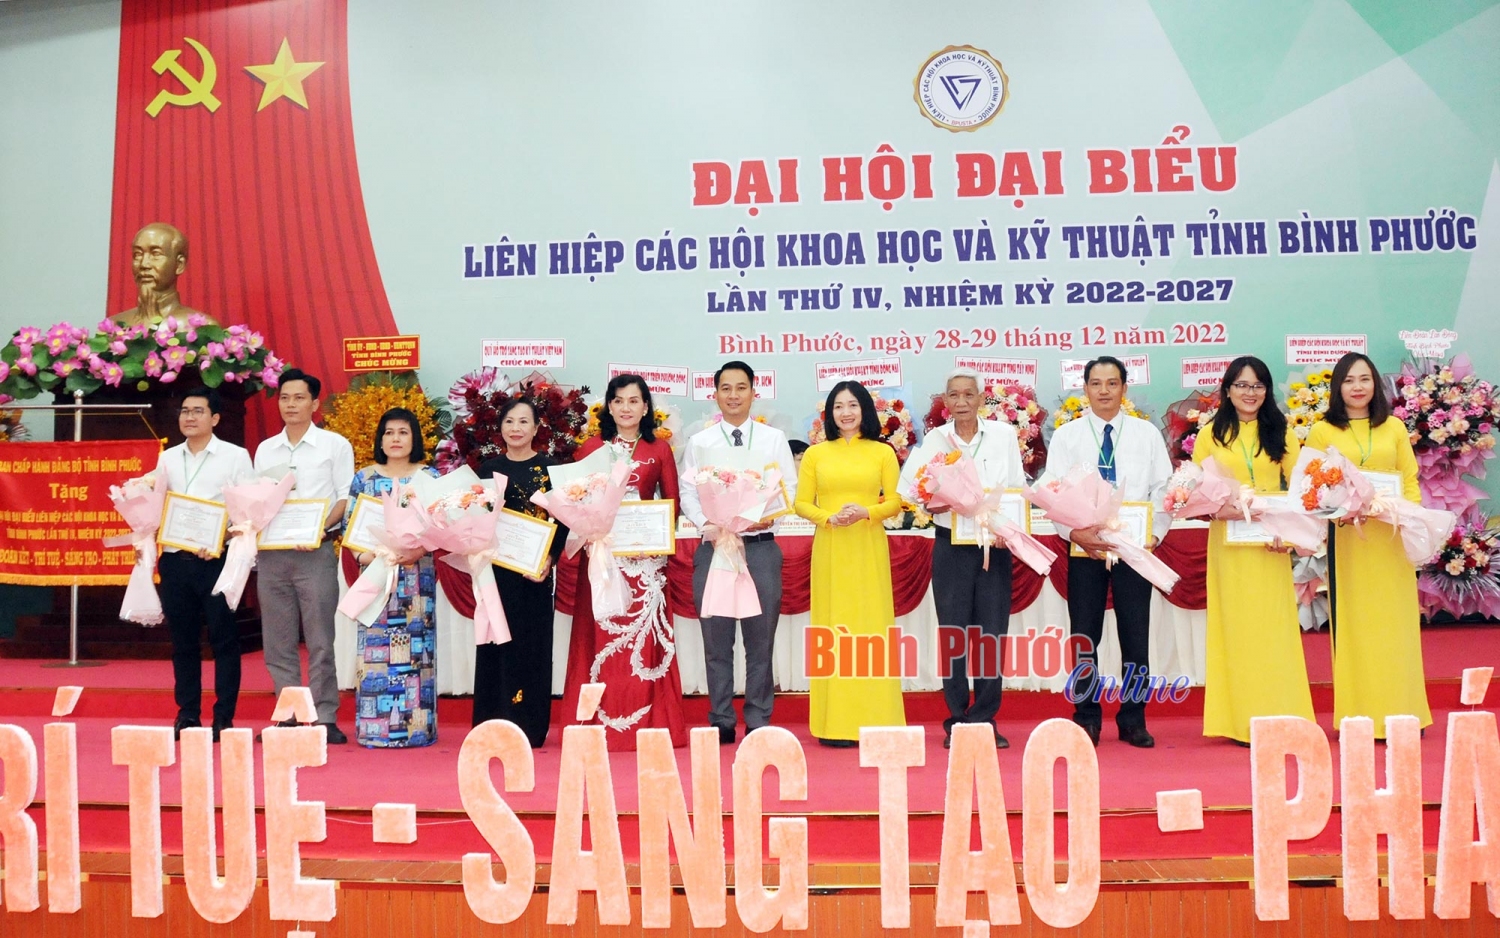 Trao tặng bằng khen của Liên hiệp các Hội Khoa học và Kỹ thuật Việt Nam và giấy khen của Liên hiệp hội tỉnh Bình Phước cho các tập thể, cá nhân xuất sắc